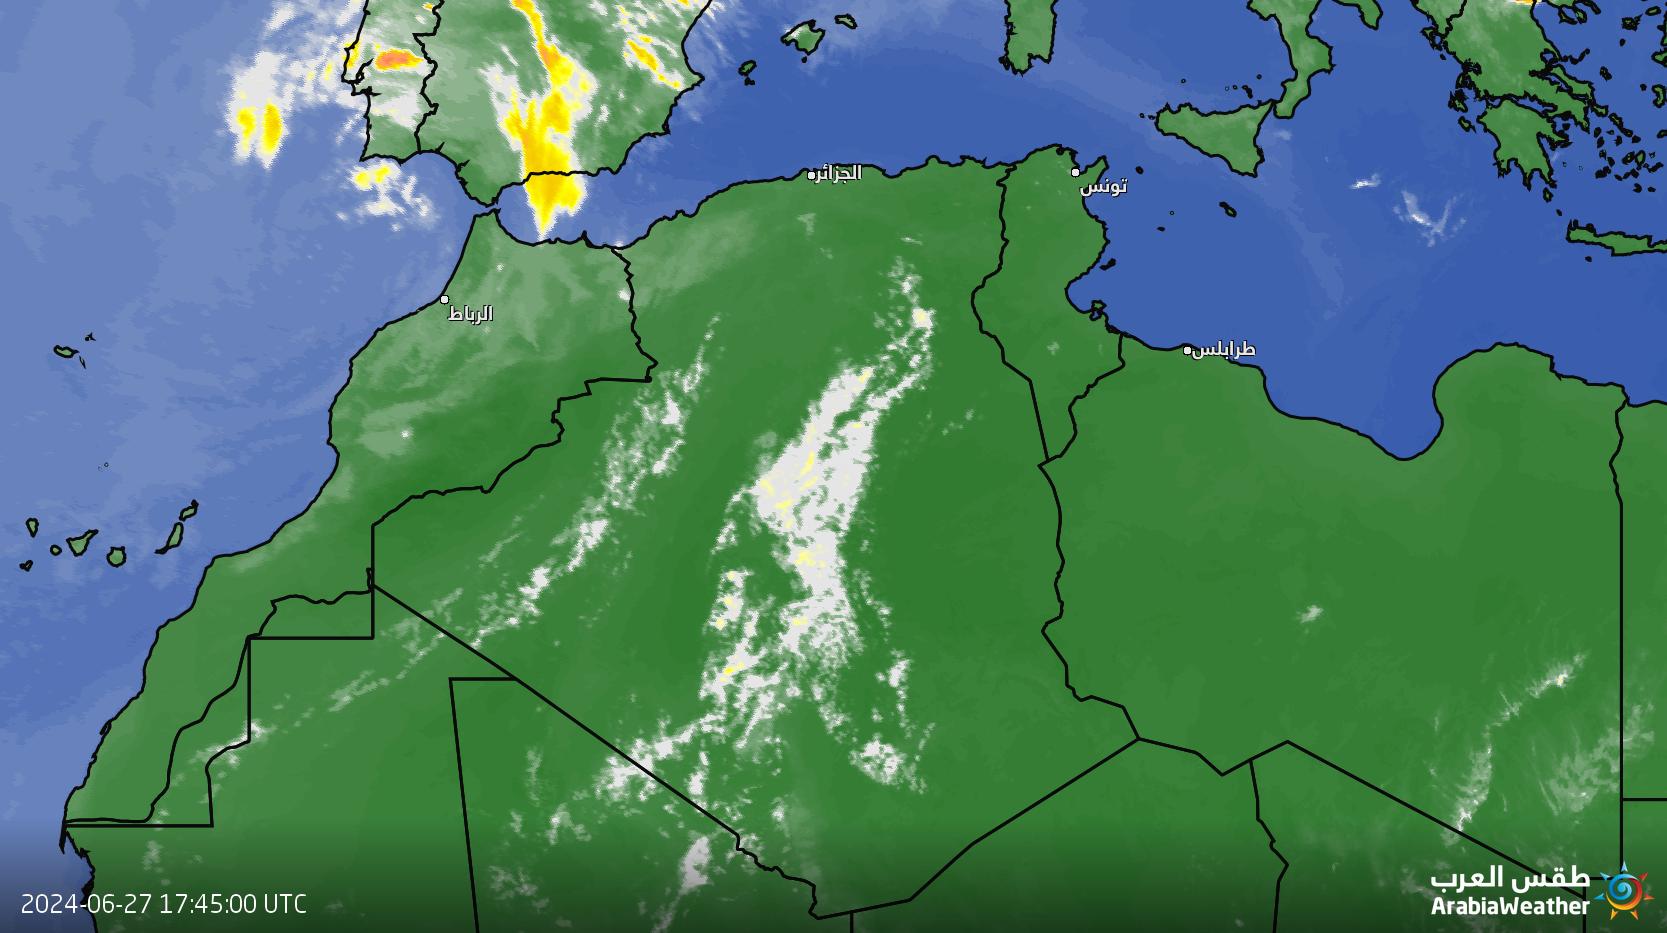 امكانية سقوط امطار متفرقة الليلة والى غاية يوم الجمعة12-08-2016 شمال الصحراء والهضاب العليا بالجزائر 1